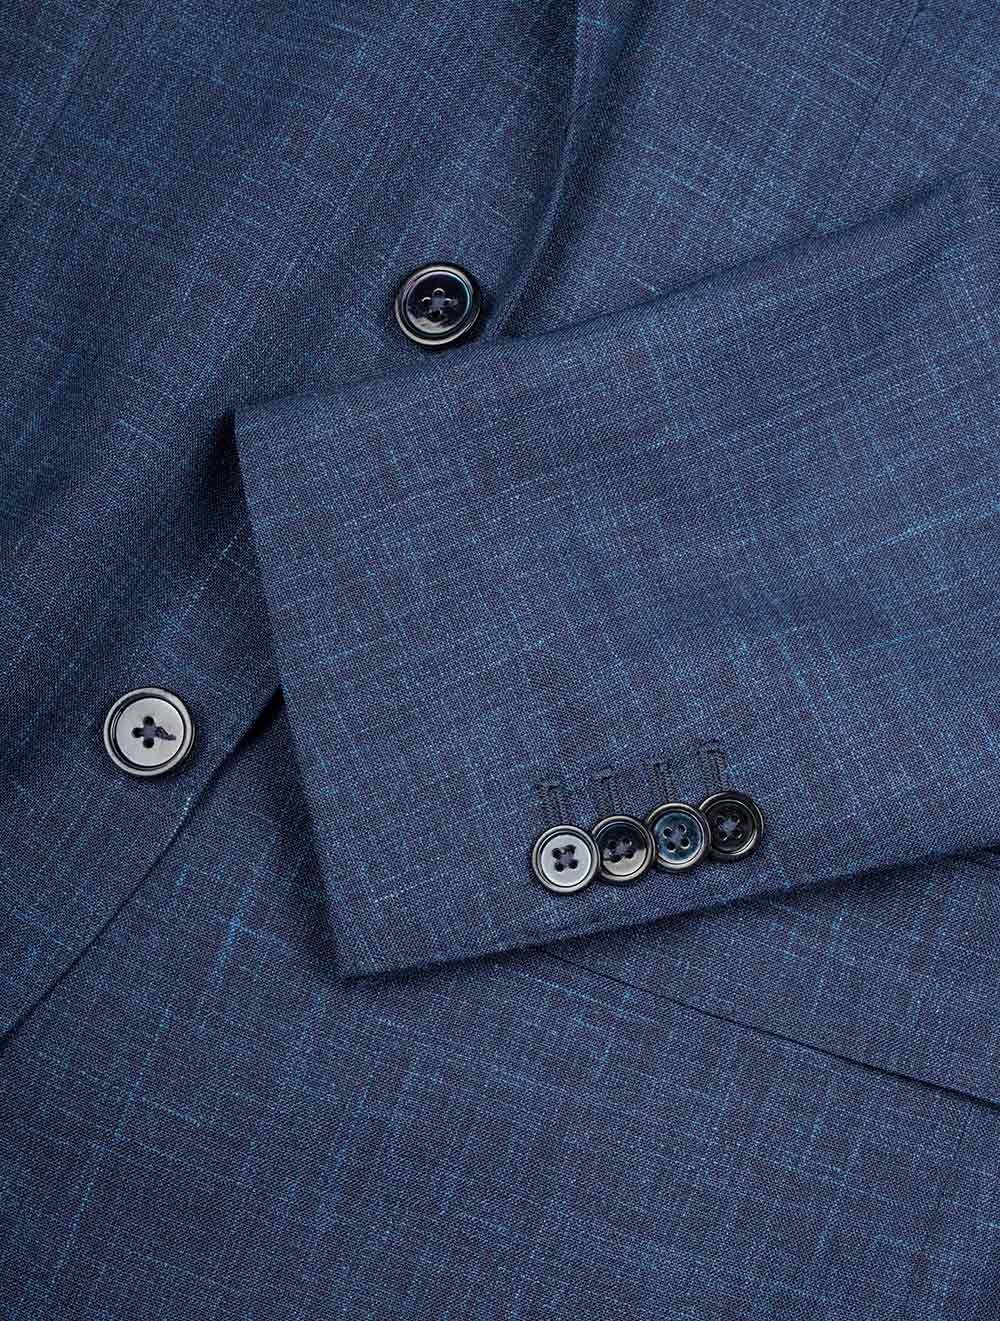 Louis Copeland Loro Piana Summertime Suit Blue 2 piece 2 button notch lapel soft shoulder flap pockets 5